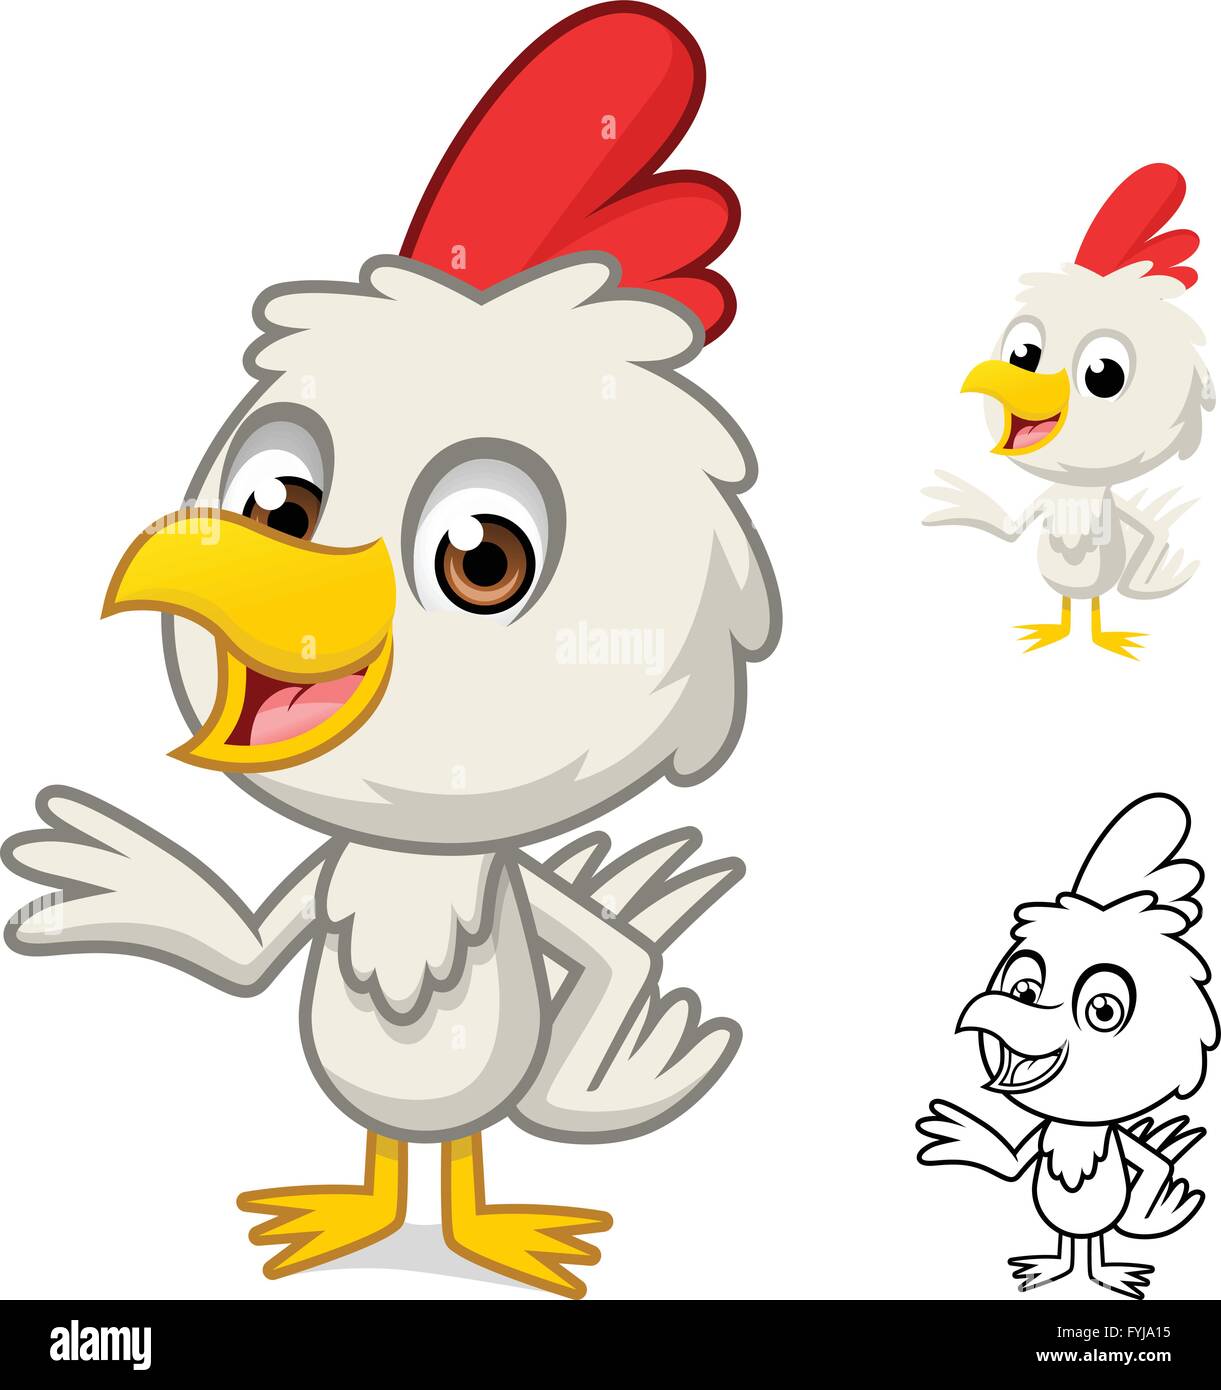 Kleines Huhn mit vorliegenden Hand-Cartoon-Figur sind durch flache Bauform und skizziert Version Vektor-Illustration Stock Vektor